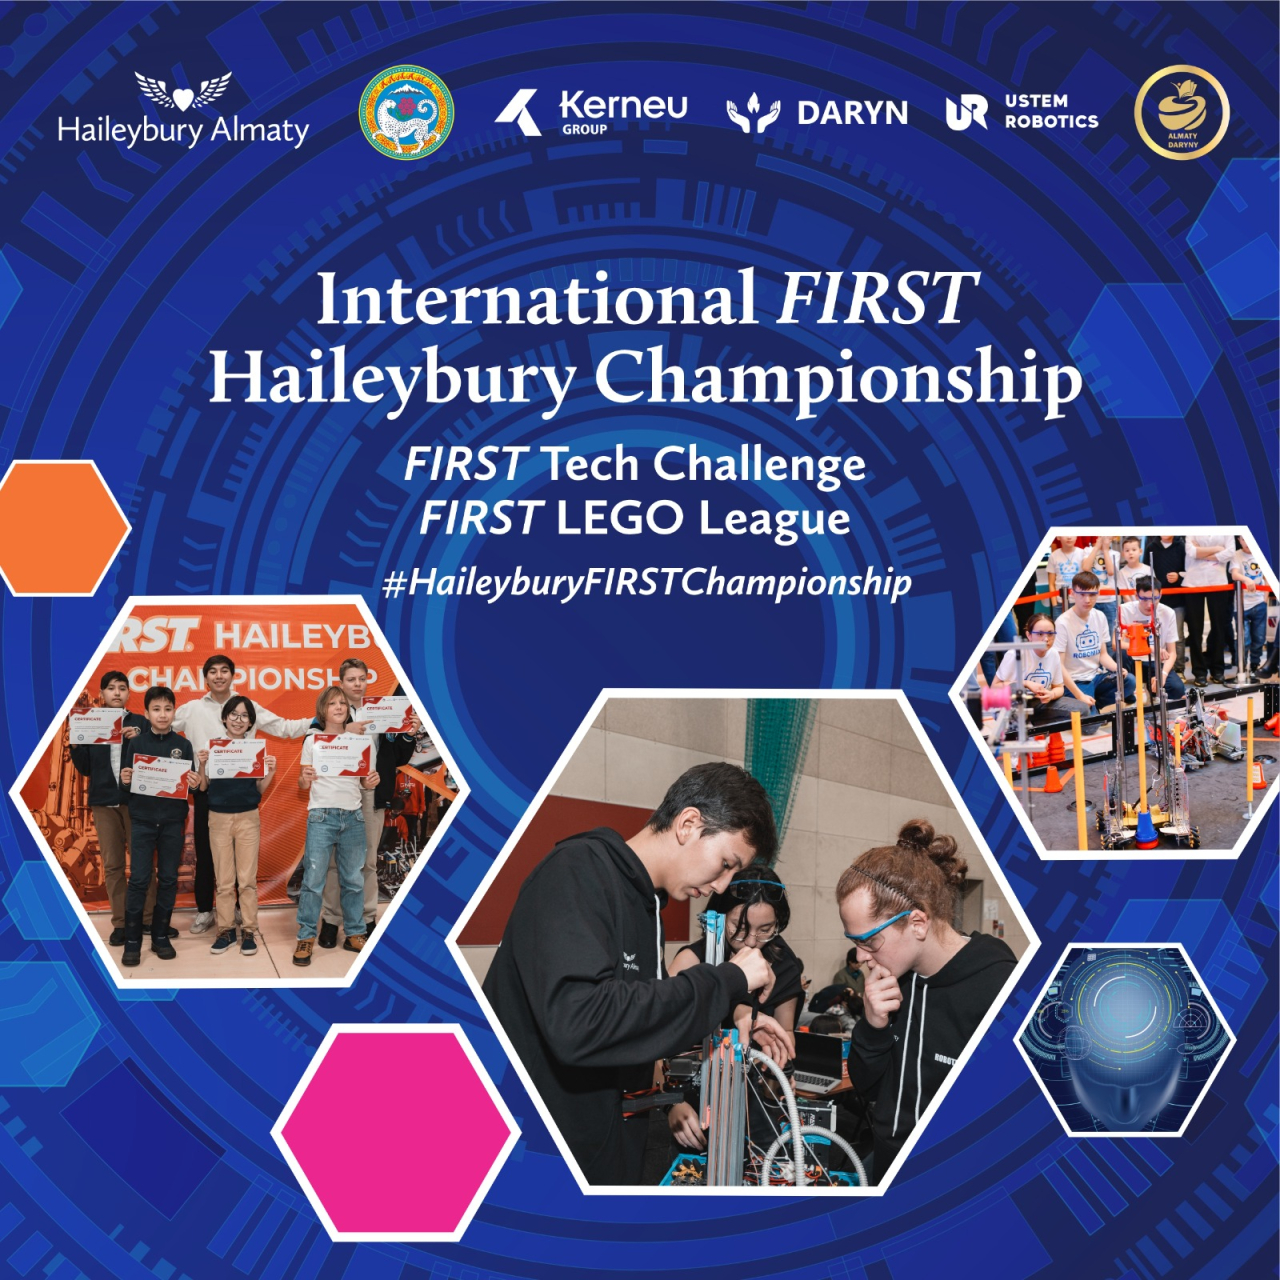 Haileybury мектебінде өтетін FIRST халықаралық чемпионаты